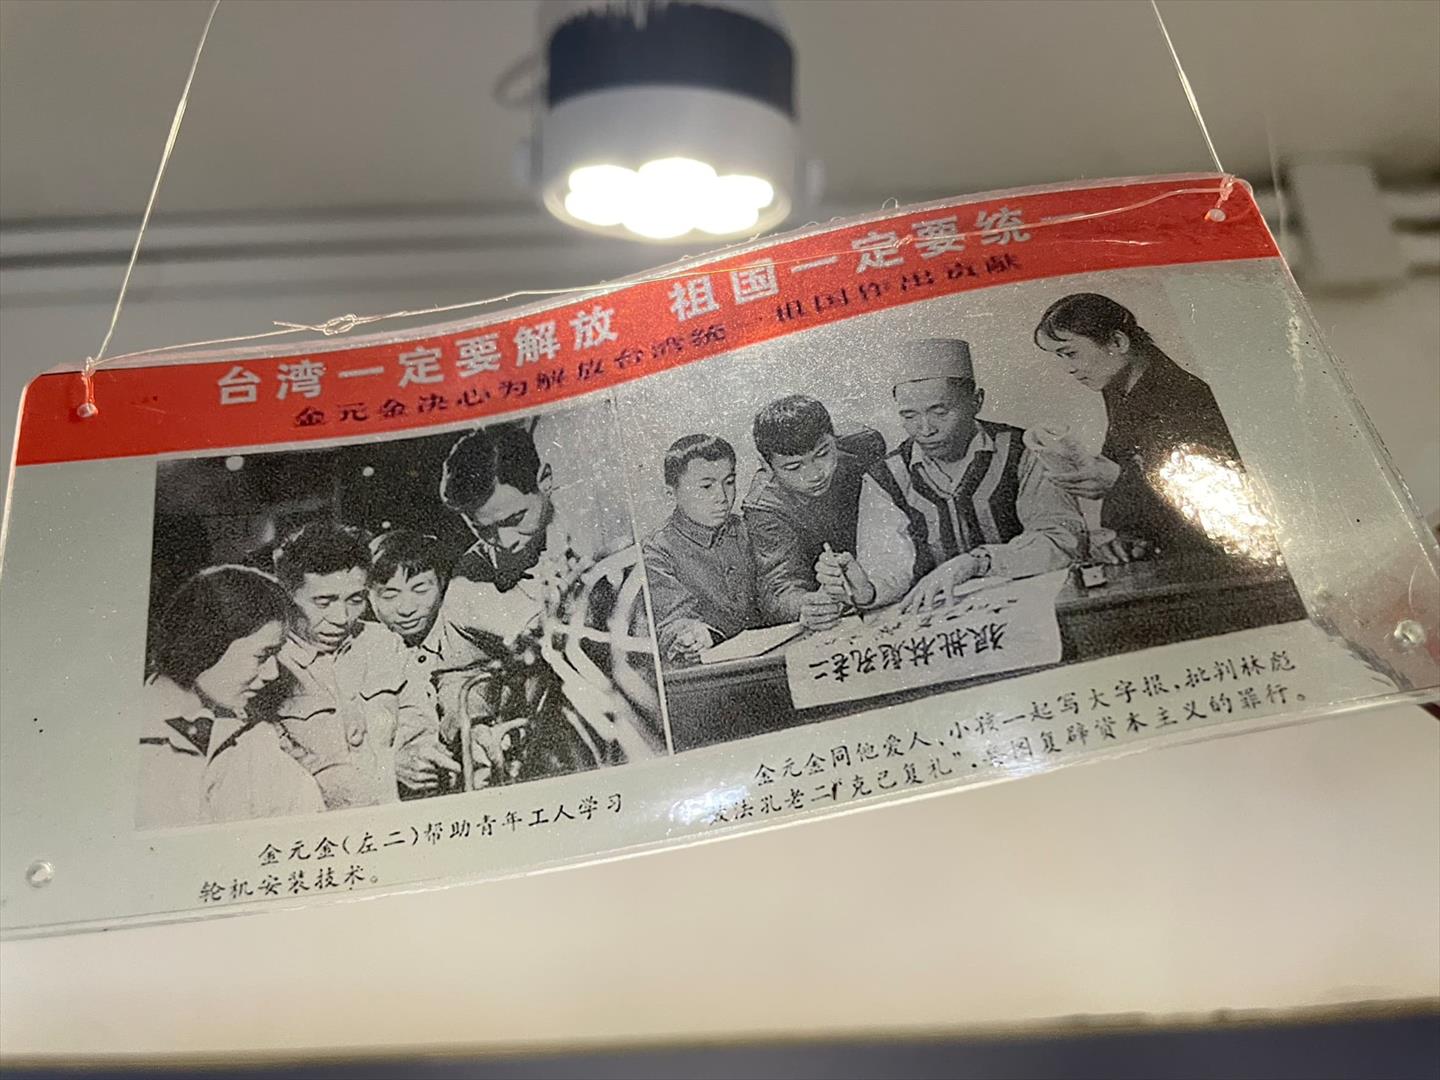 宣傳彈上寫著「台灣一定要解放 祖國一定要統一」。